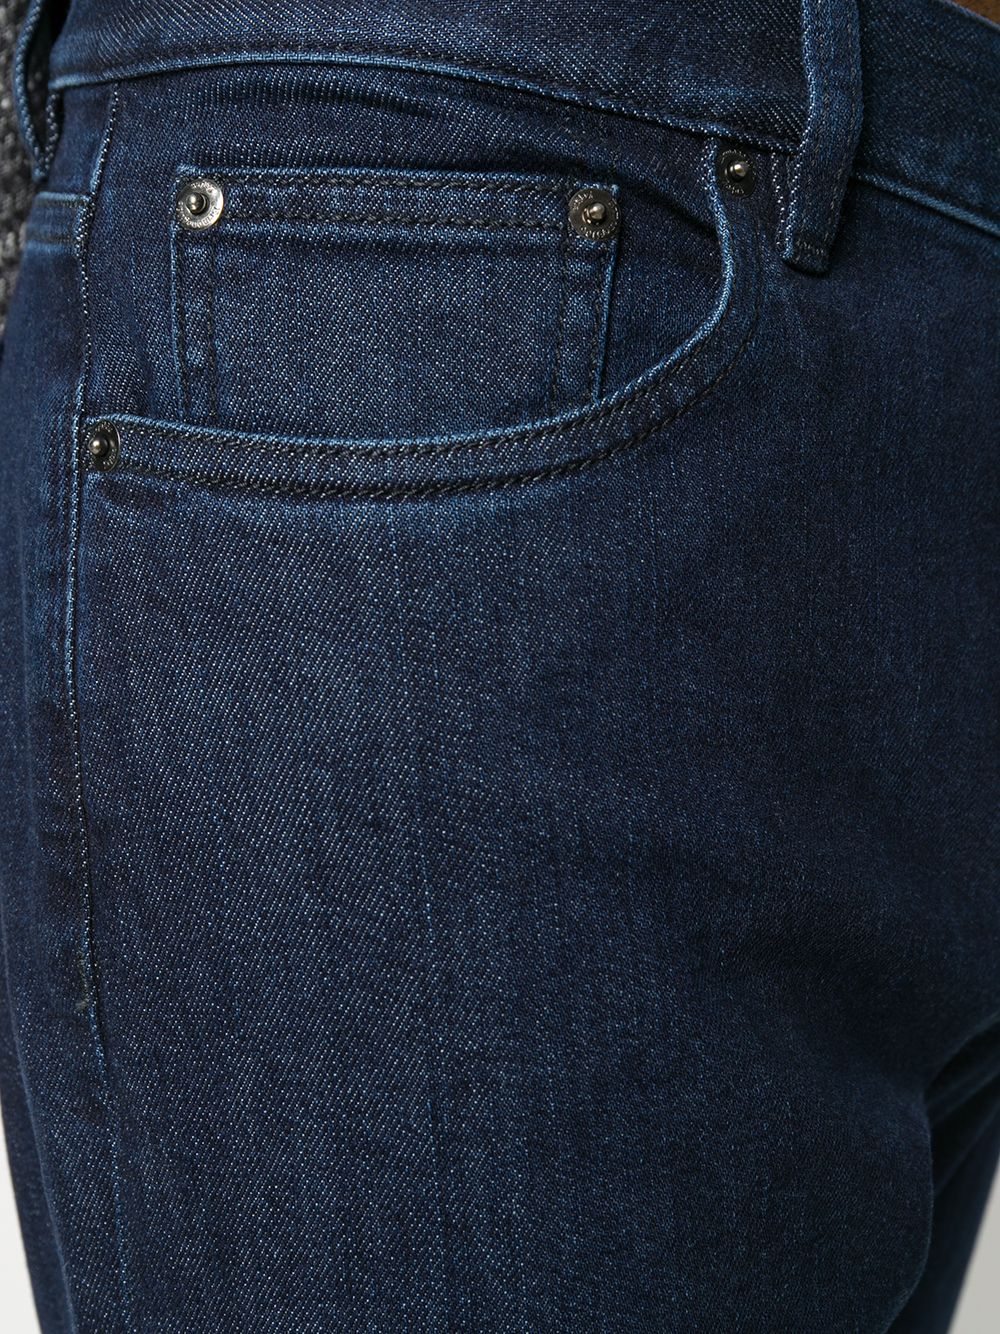 фото Ermenegildo zegna прямые джинсы средней посадки